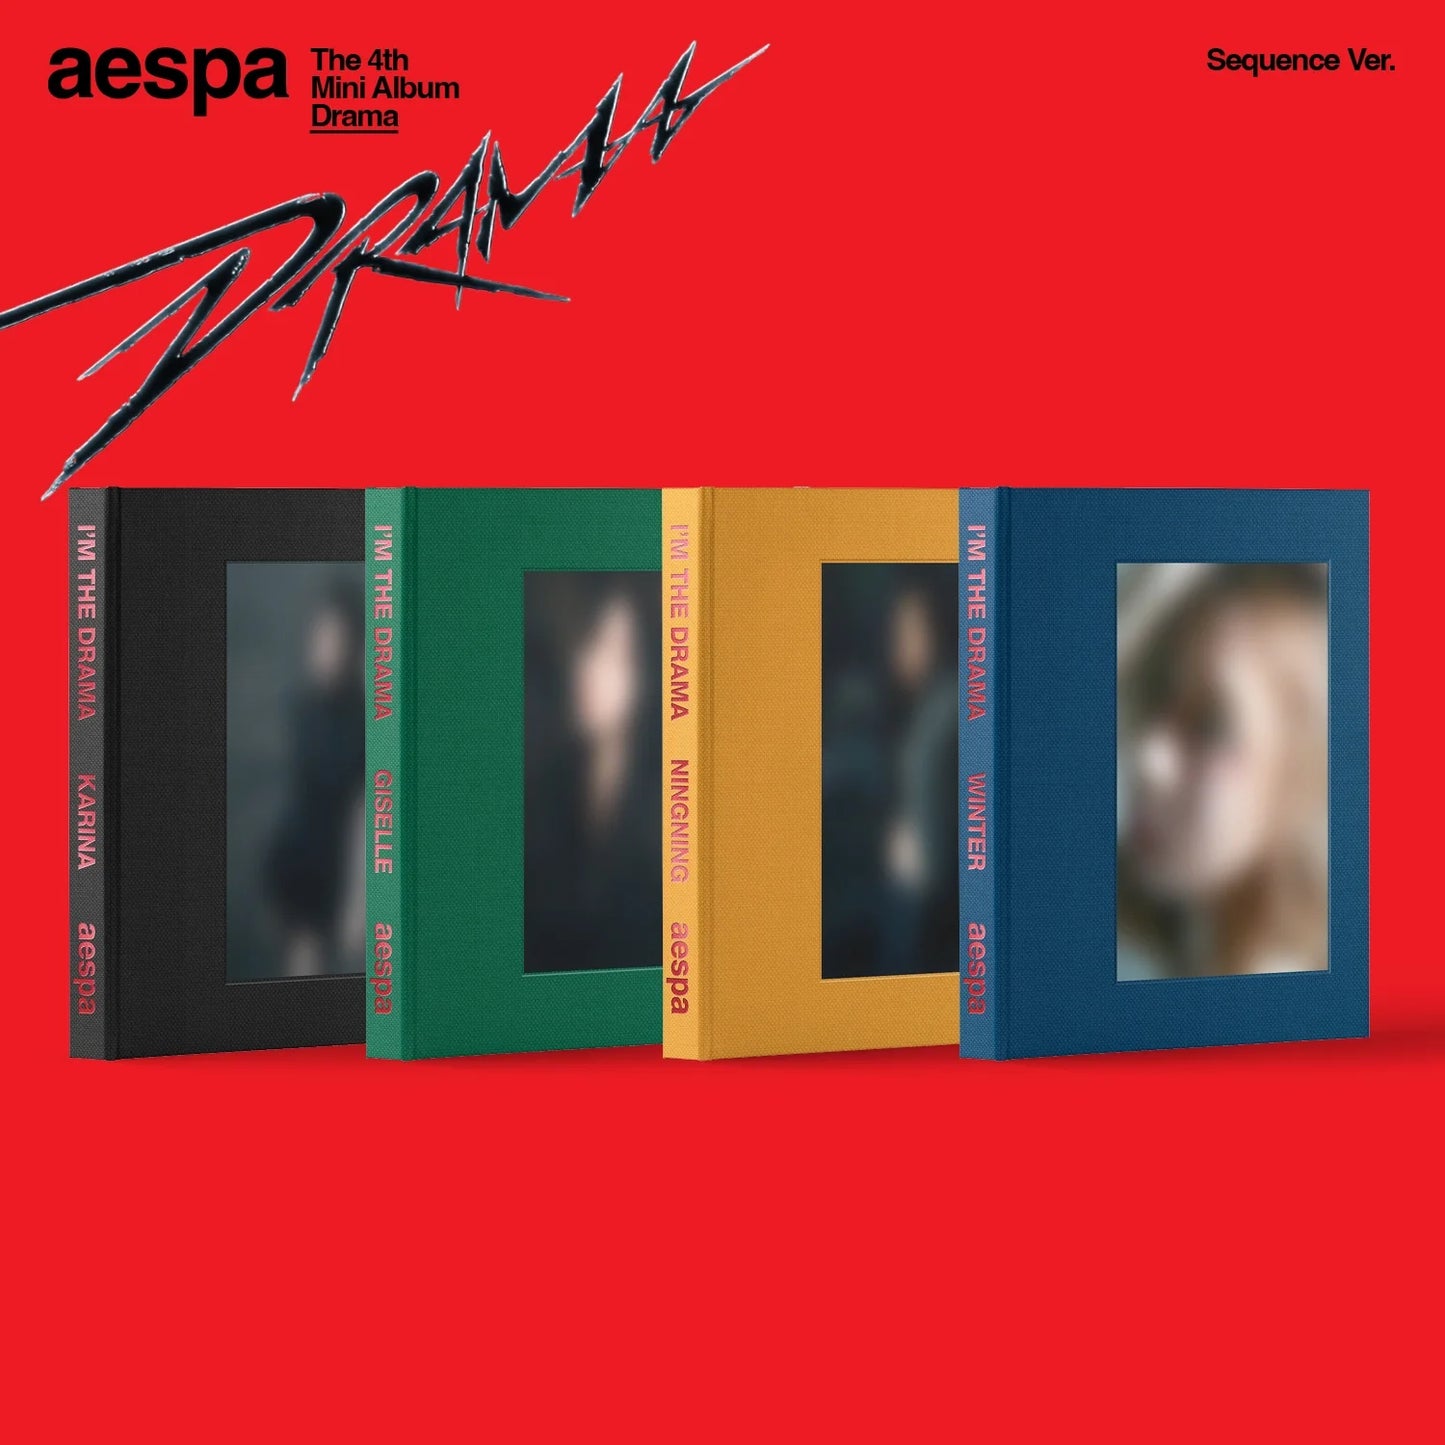 aespa The 4th Mini Album [Drama] (Sequence Ver.)